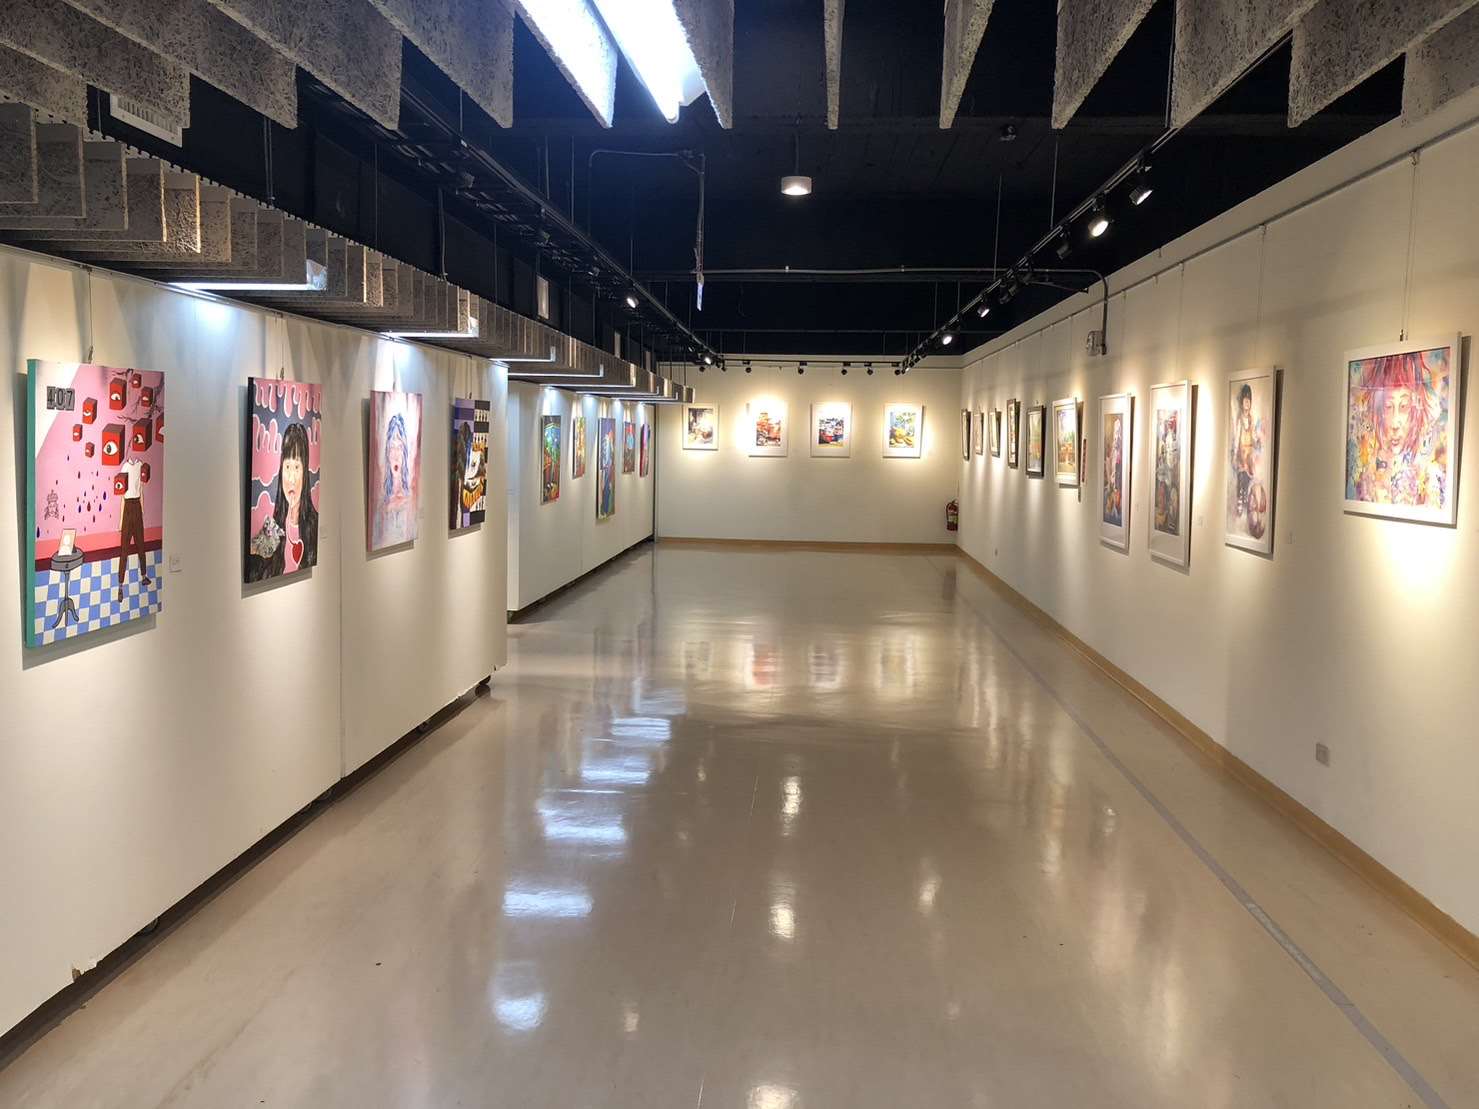 斗六高中第25屆美術班畢業成果展3/31至4/16文觀處展覽館展出，歡迎民眾踴躍觀賞。